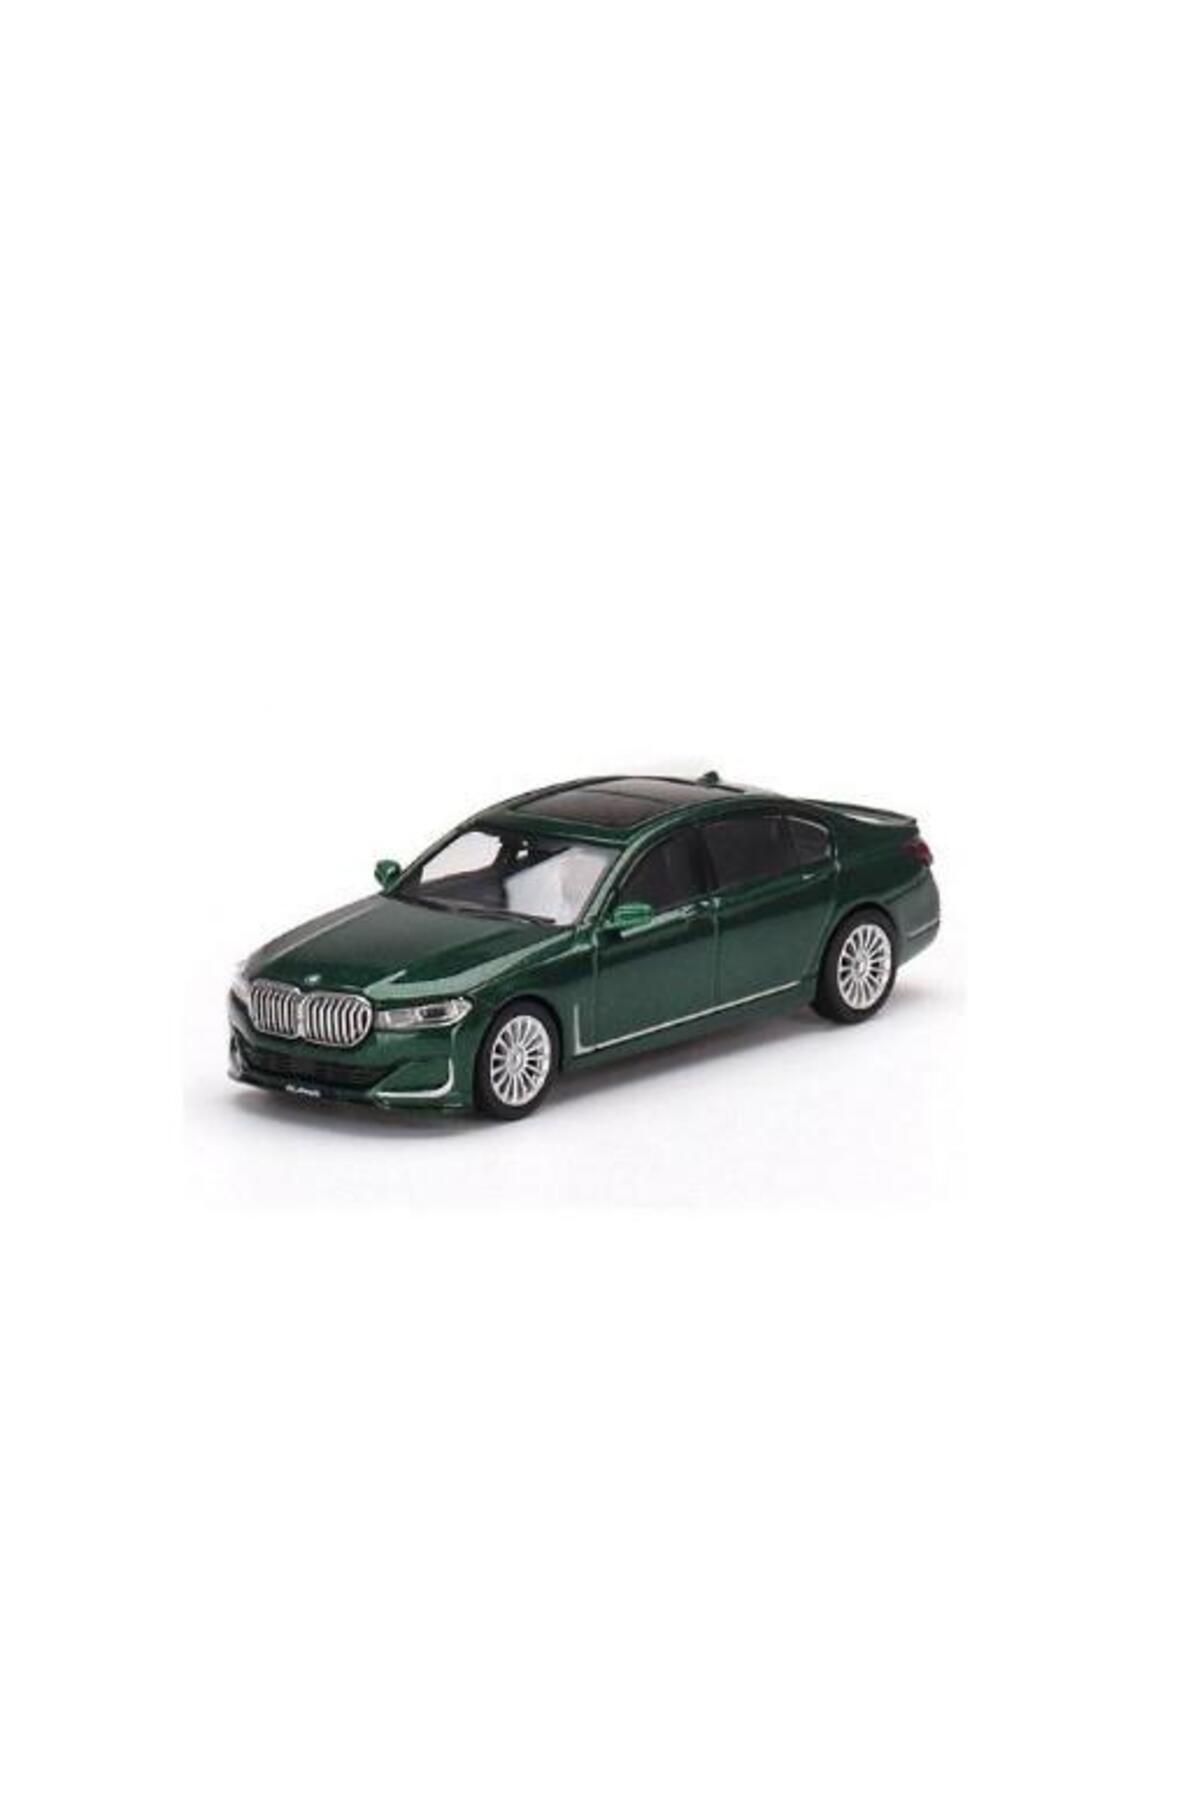 mini gt 498 BMW Alpina B7 xDrive Green Metallic 1/64 CHASE مدل ماشین TYCC7X7FUN169124252883671